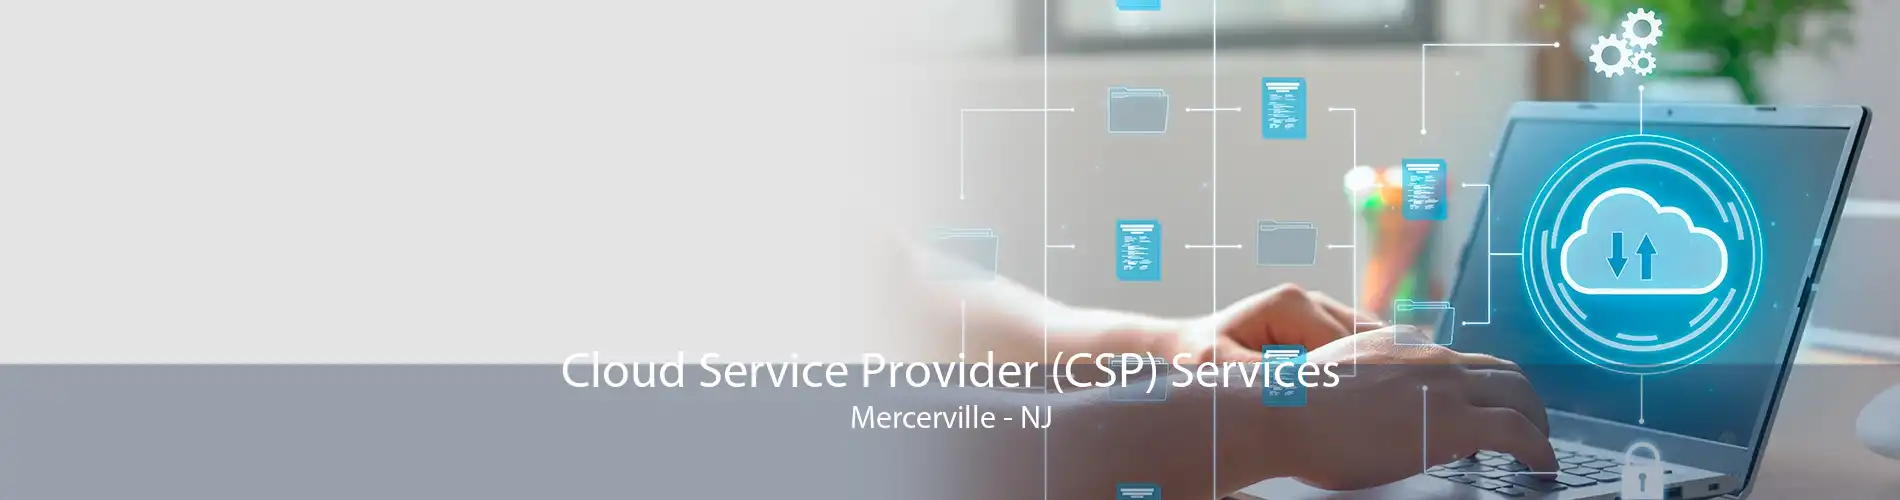 Cloud Service Provider (CSP) Services Mercerville - NJ